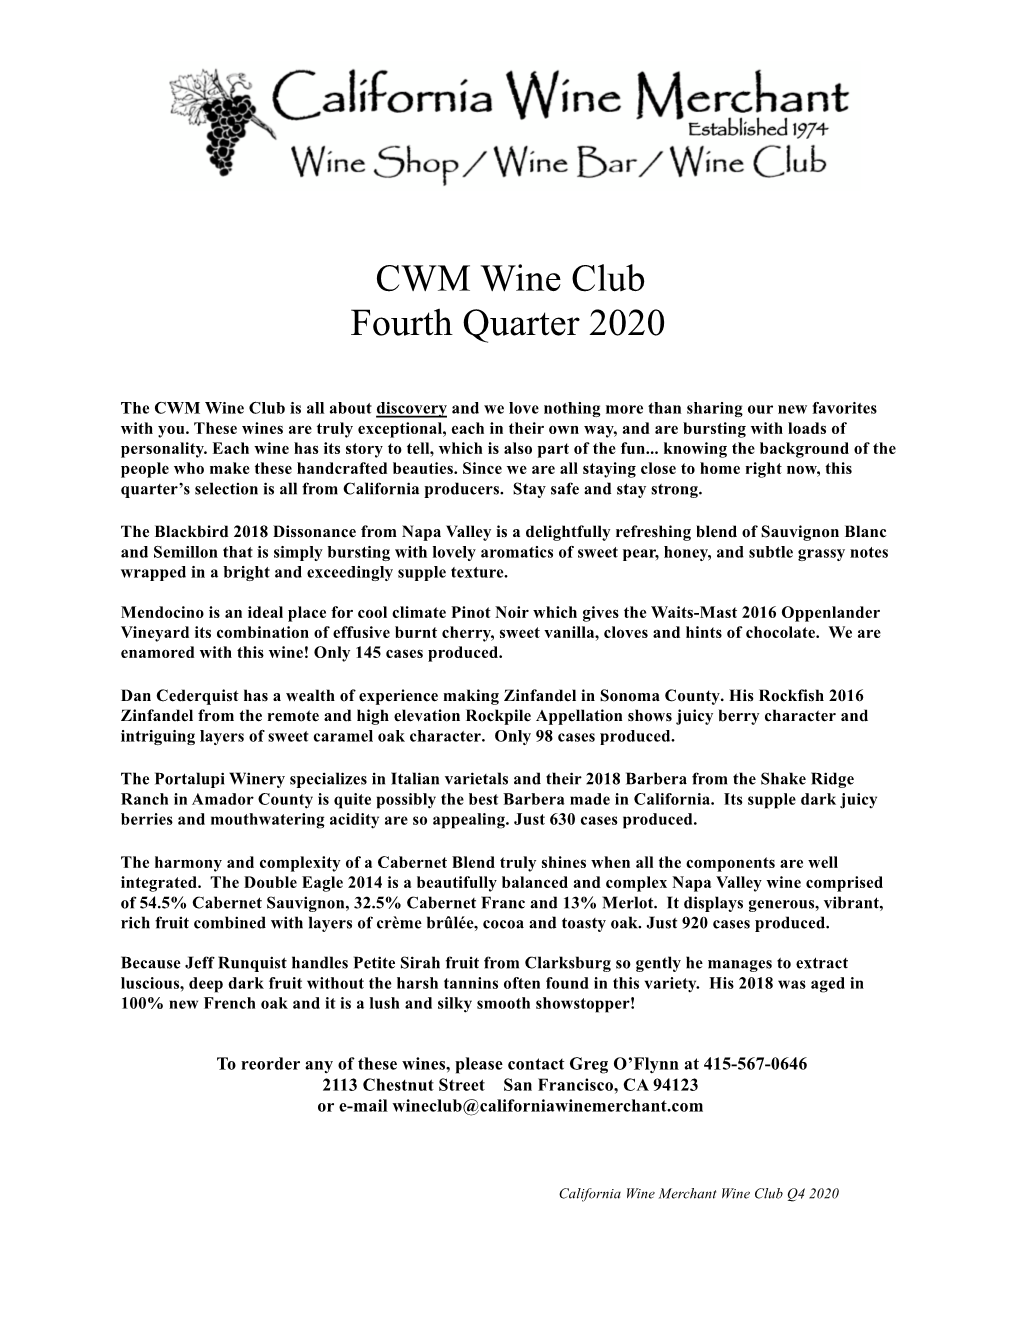 CWM Wine Club Fourth Quarter 2020